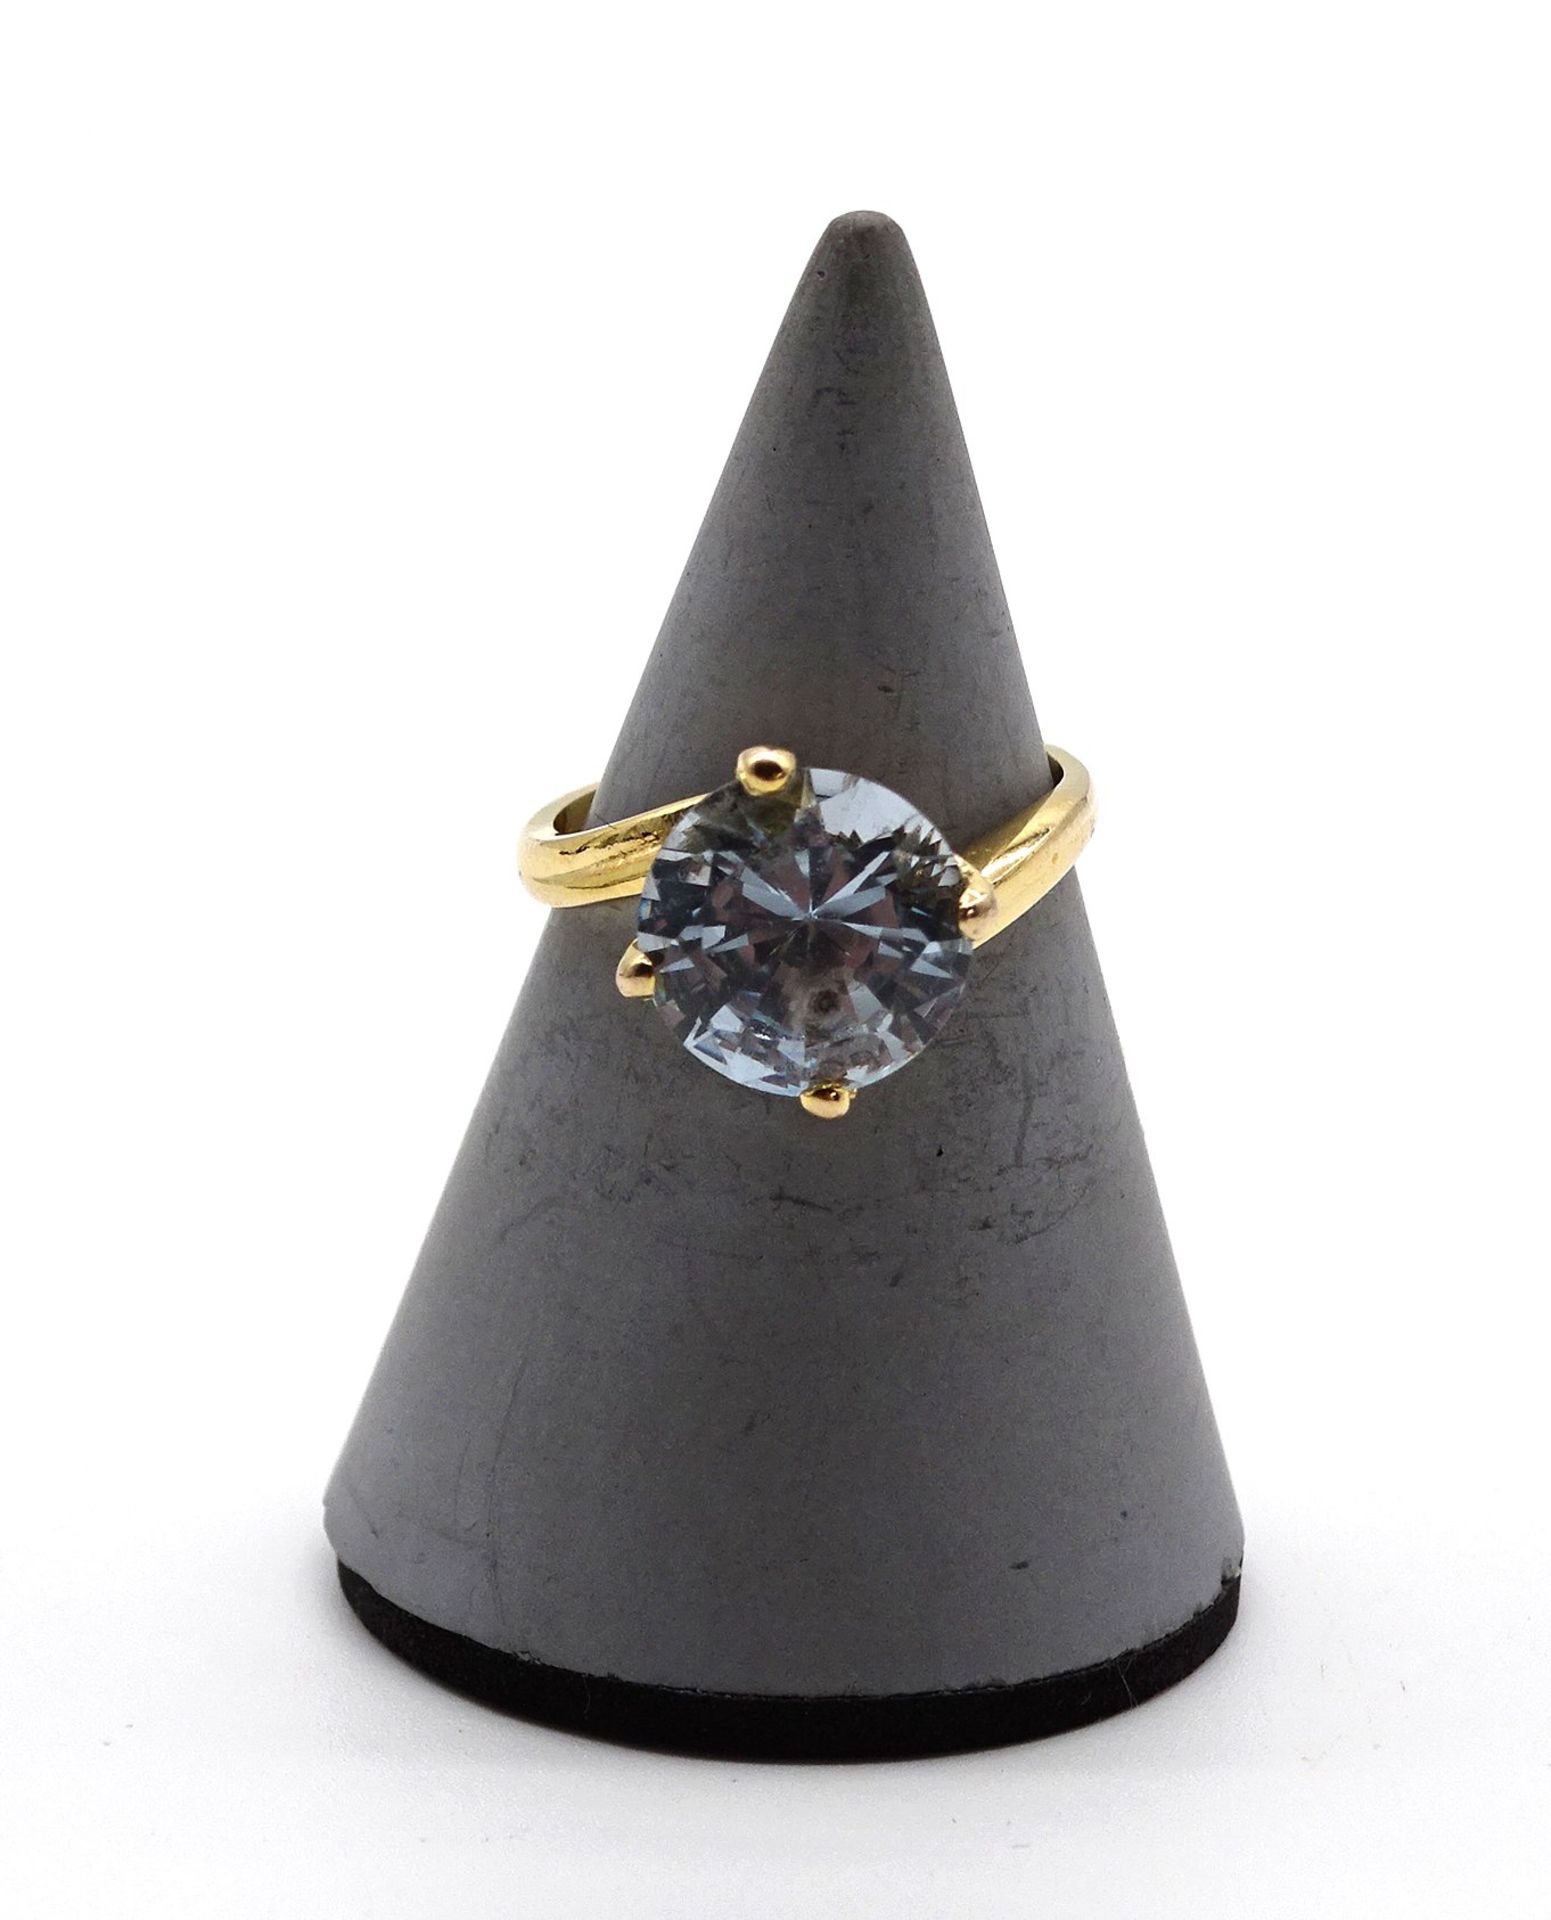 Silberring 800/000 vergoldet, gefasst mit einem blauen Edelstein, Gewicht: 3,2 g. RG: 50